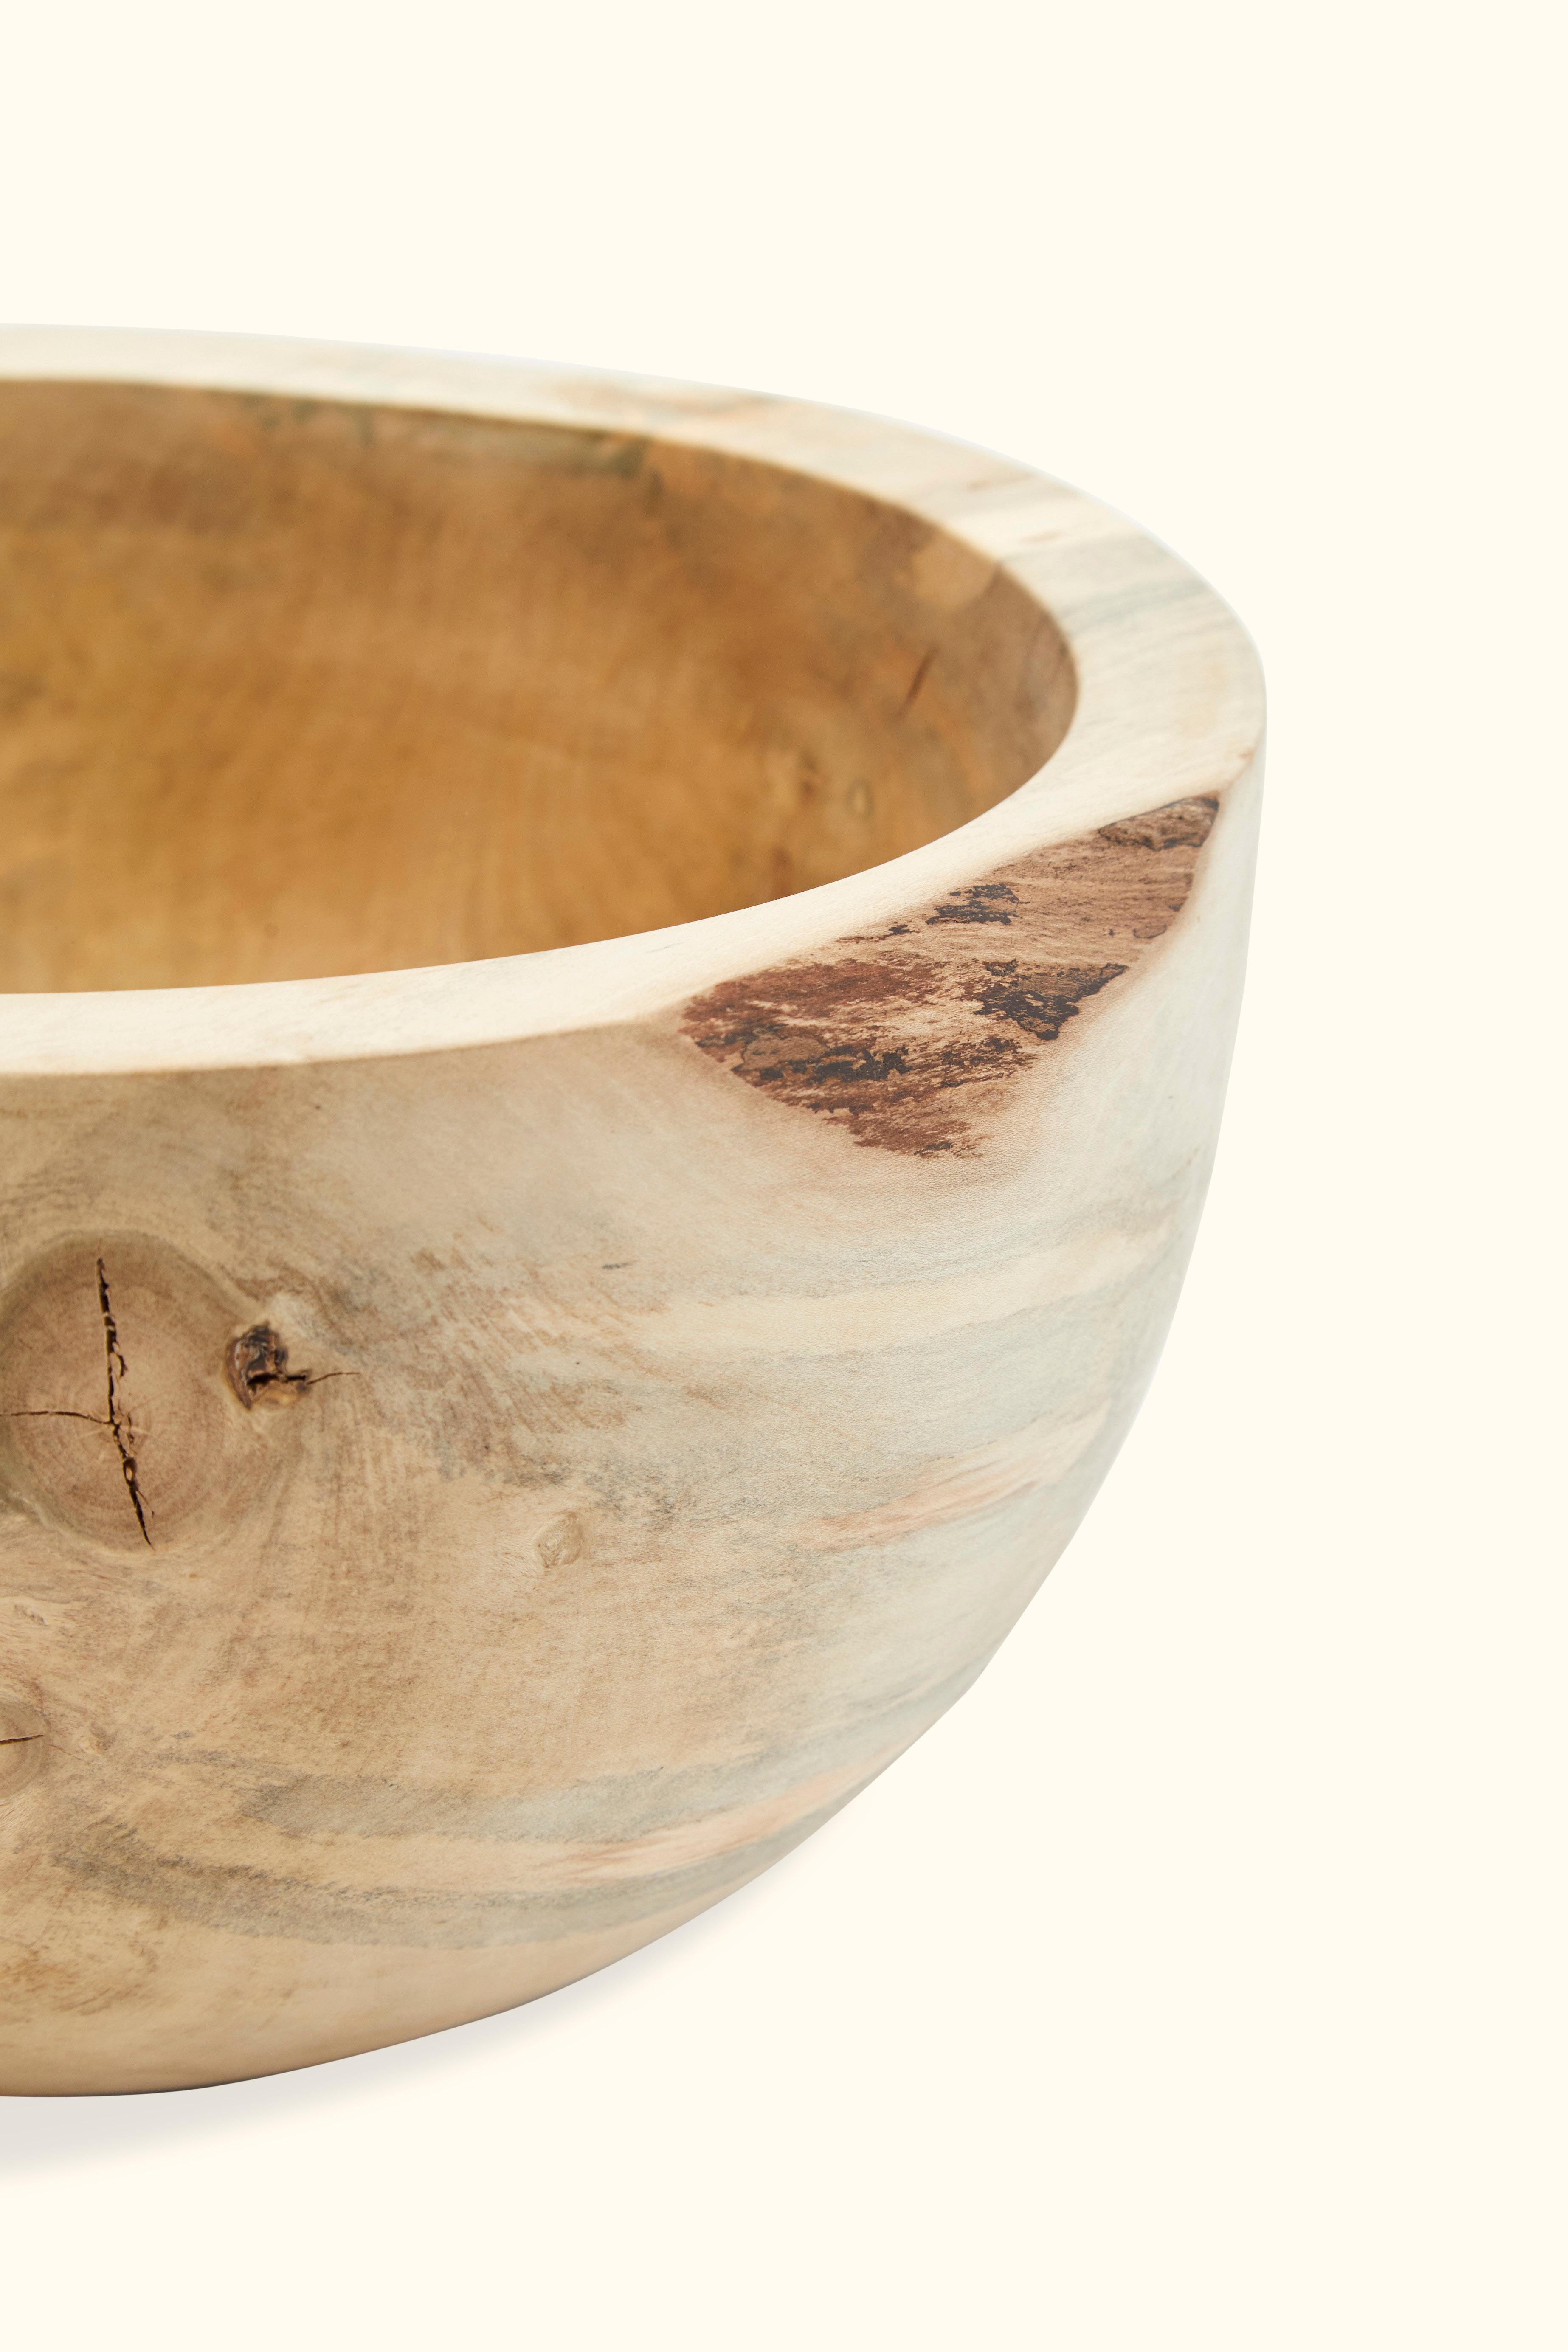 American Wooden Bowl by Wyatt Speight Rhue